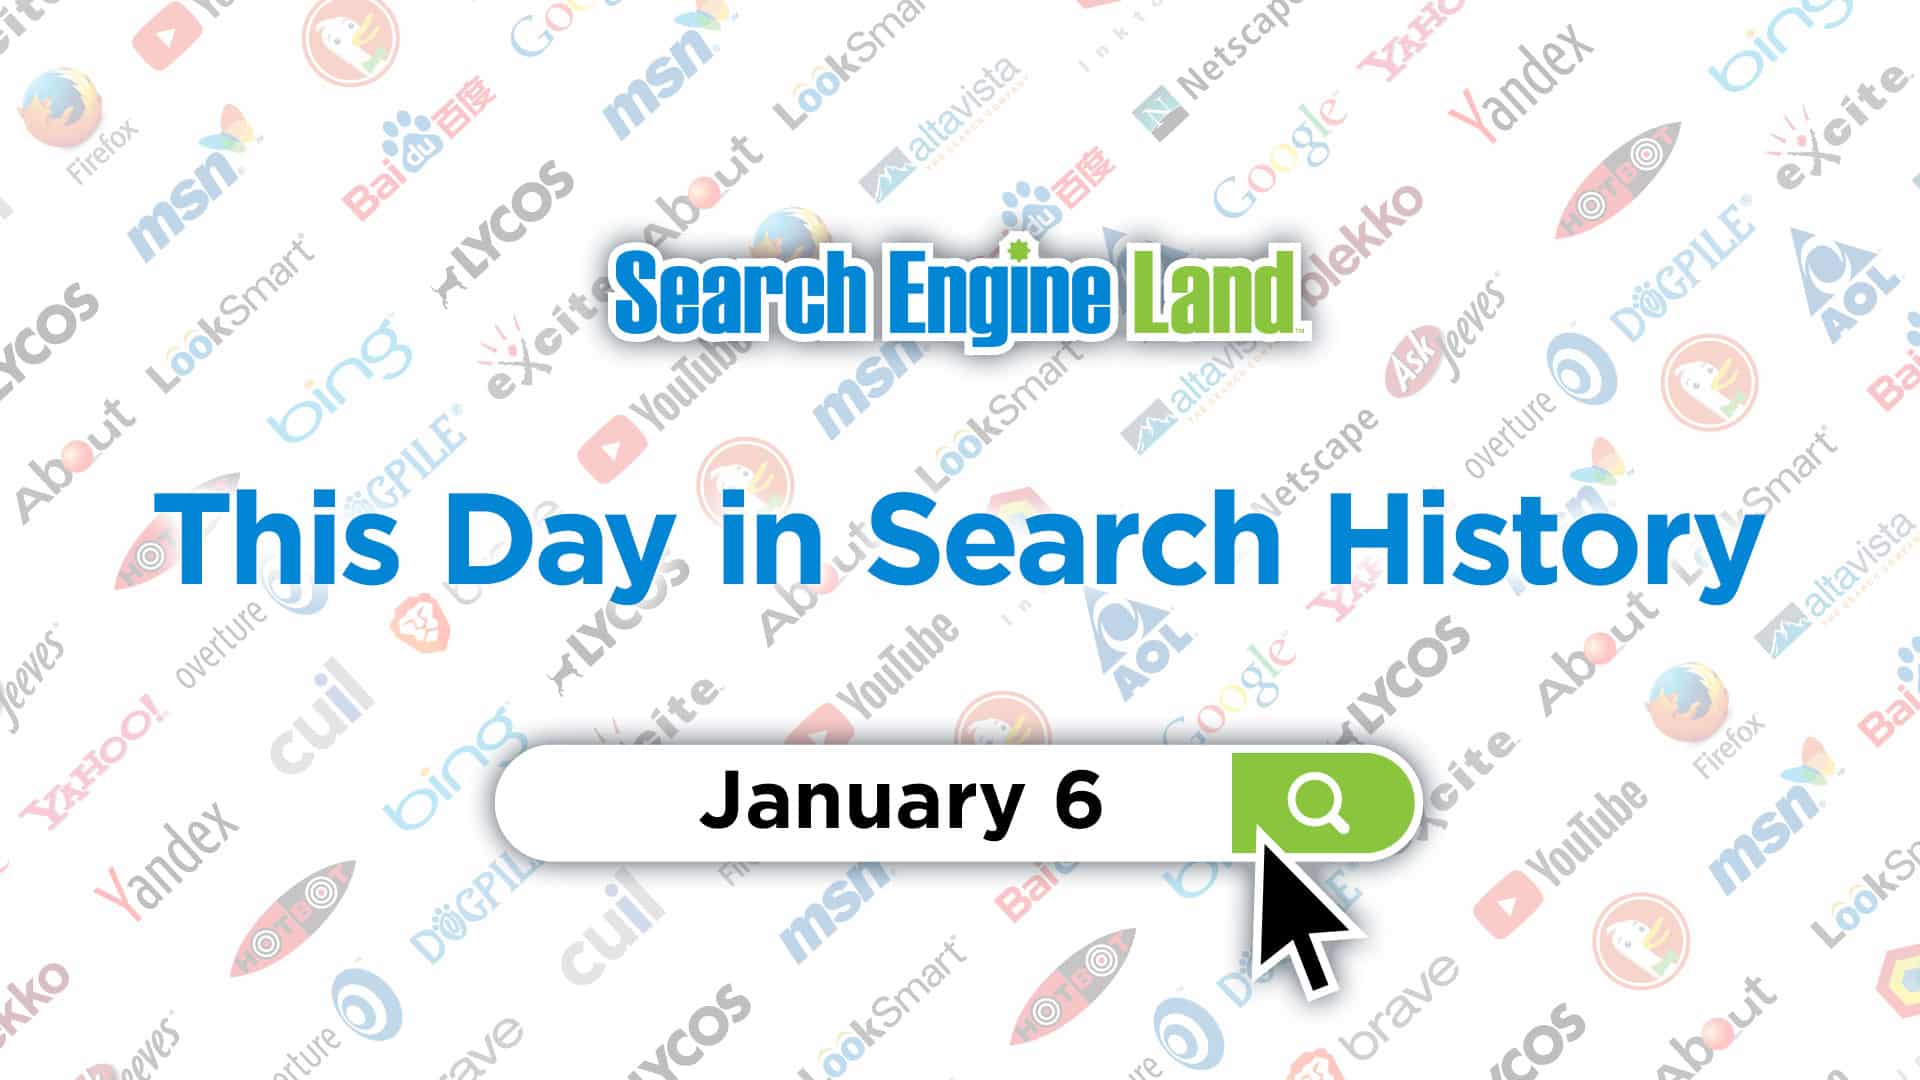 این روز در تاریخچه بازاریابی جستجو: 6 ژانویه, محتوا مارکتینگ